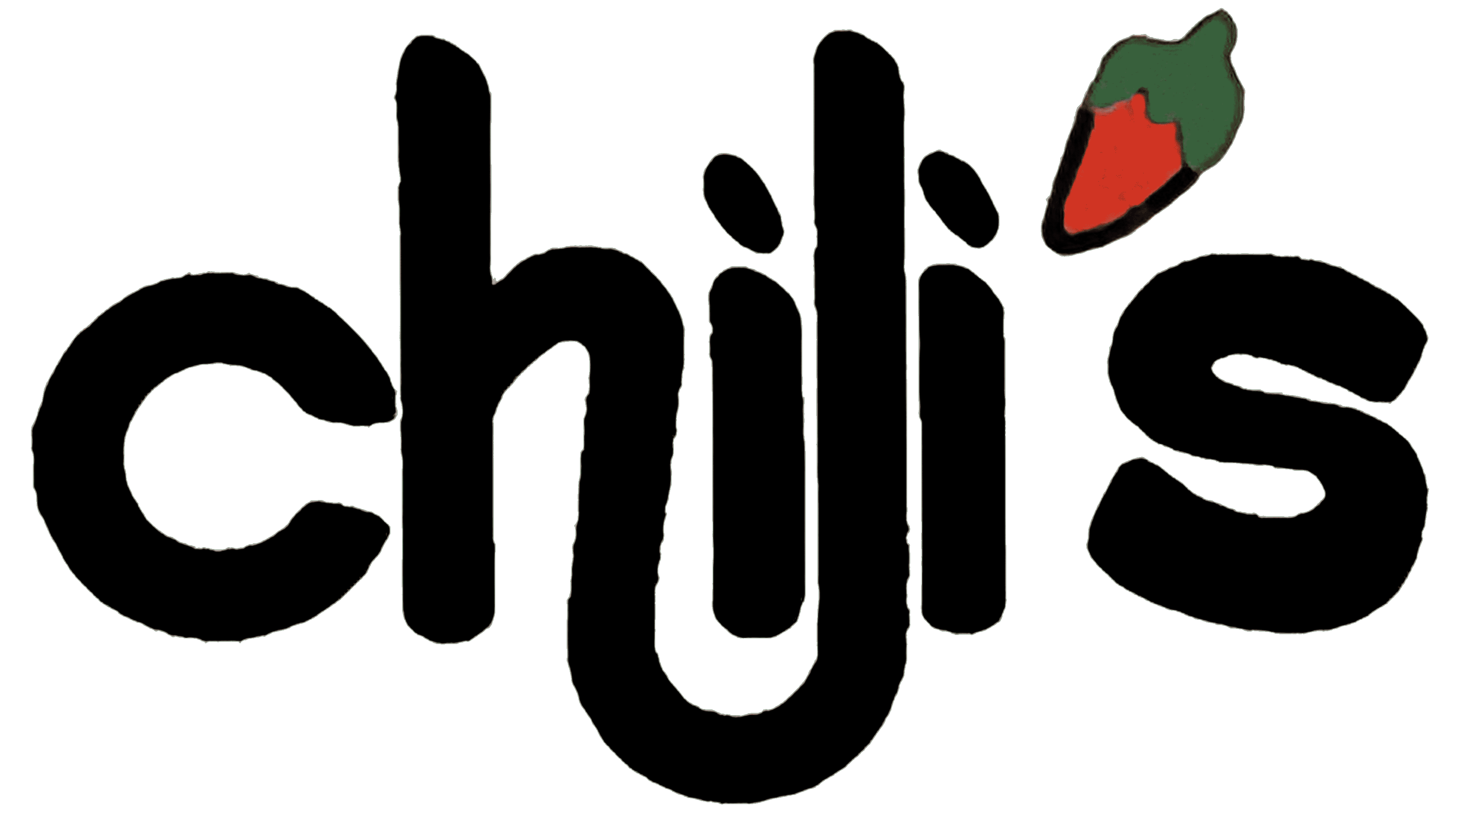 Chilis sign 1975 1983